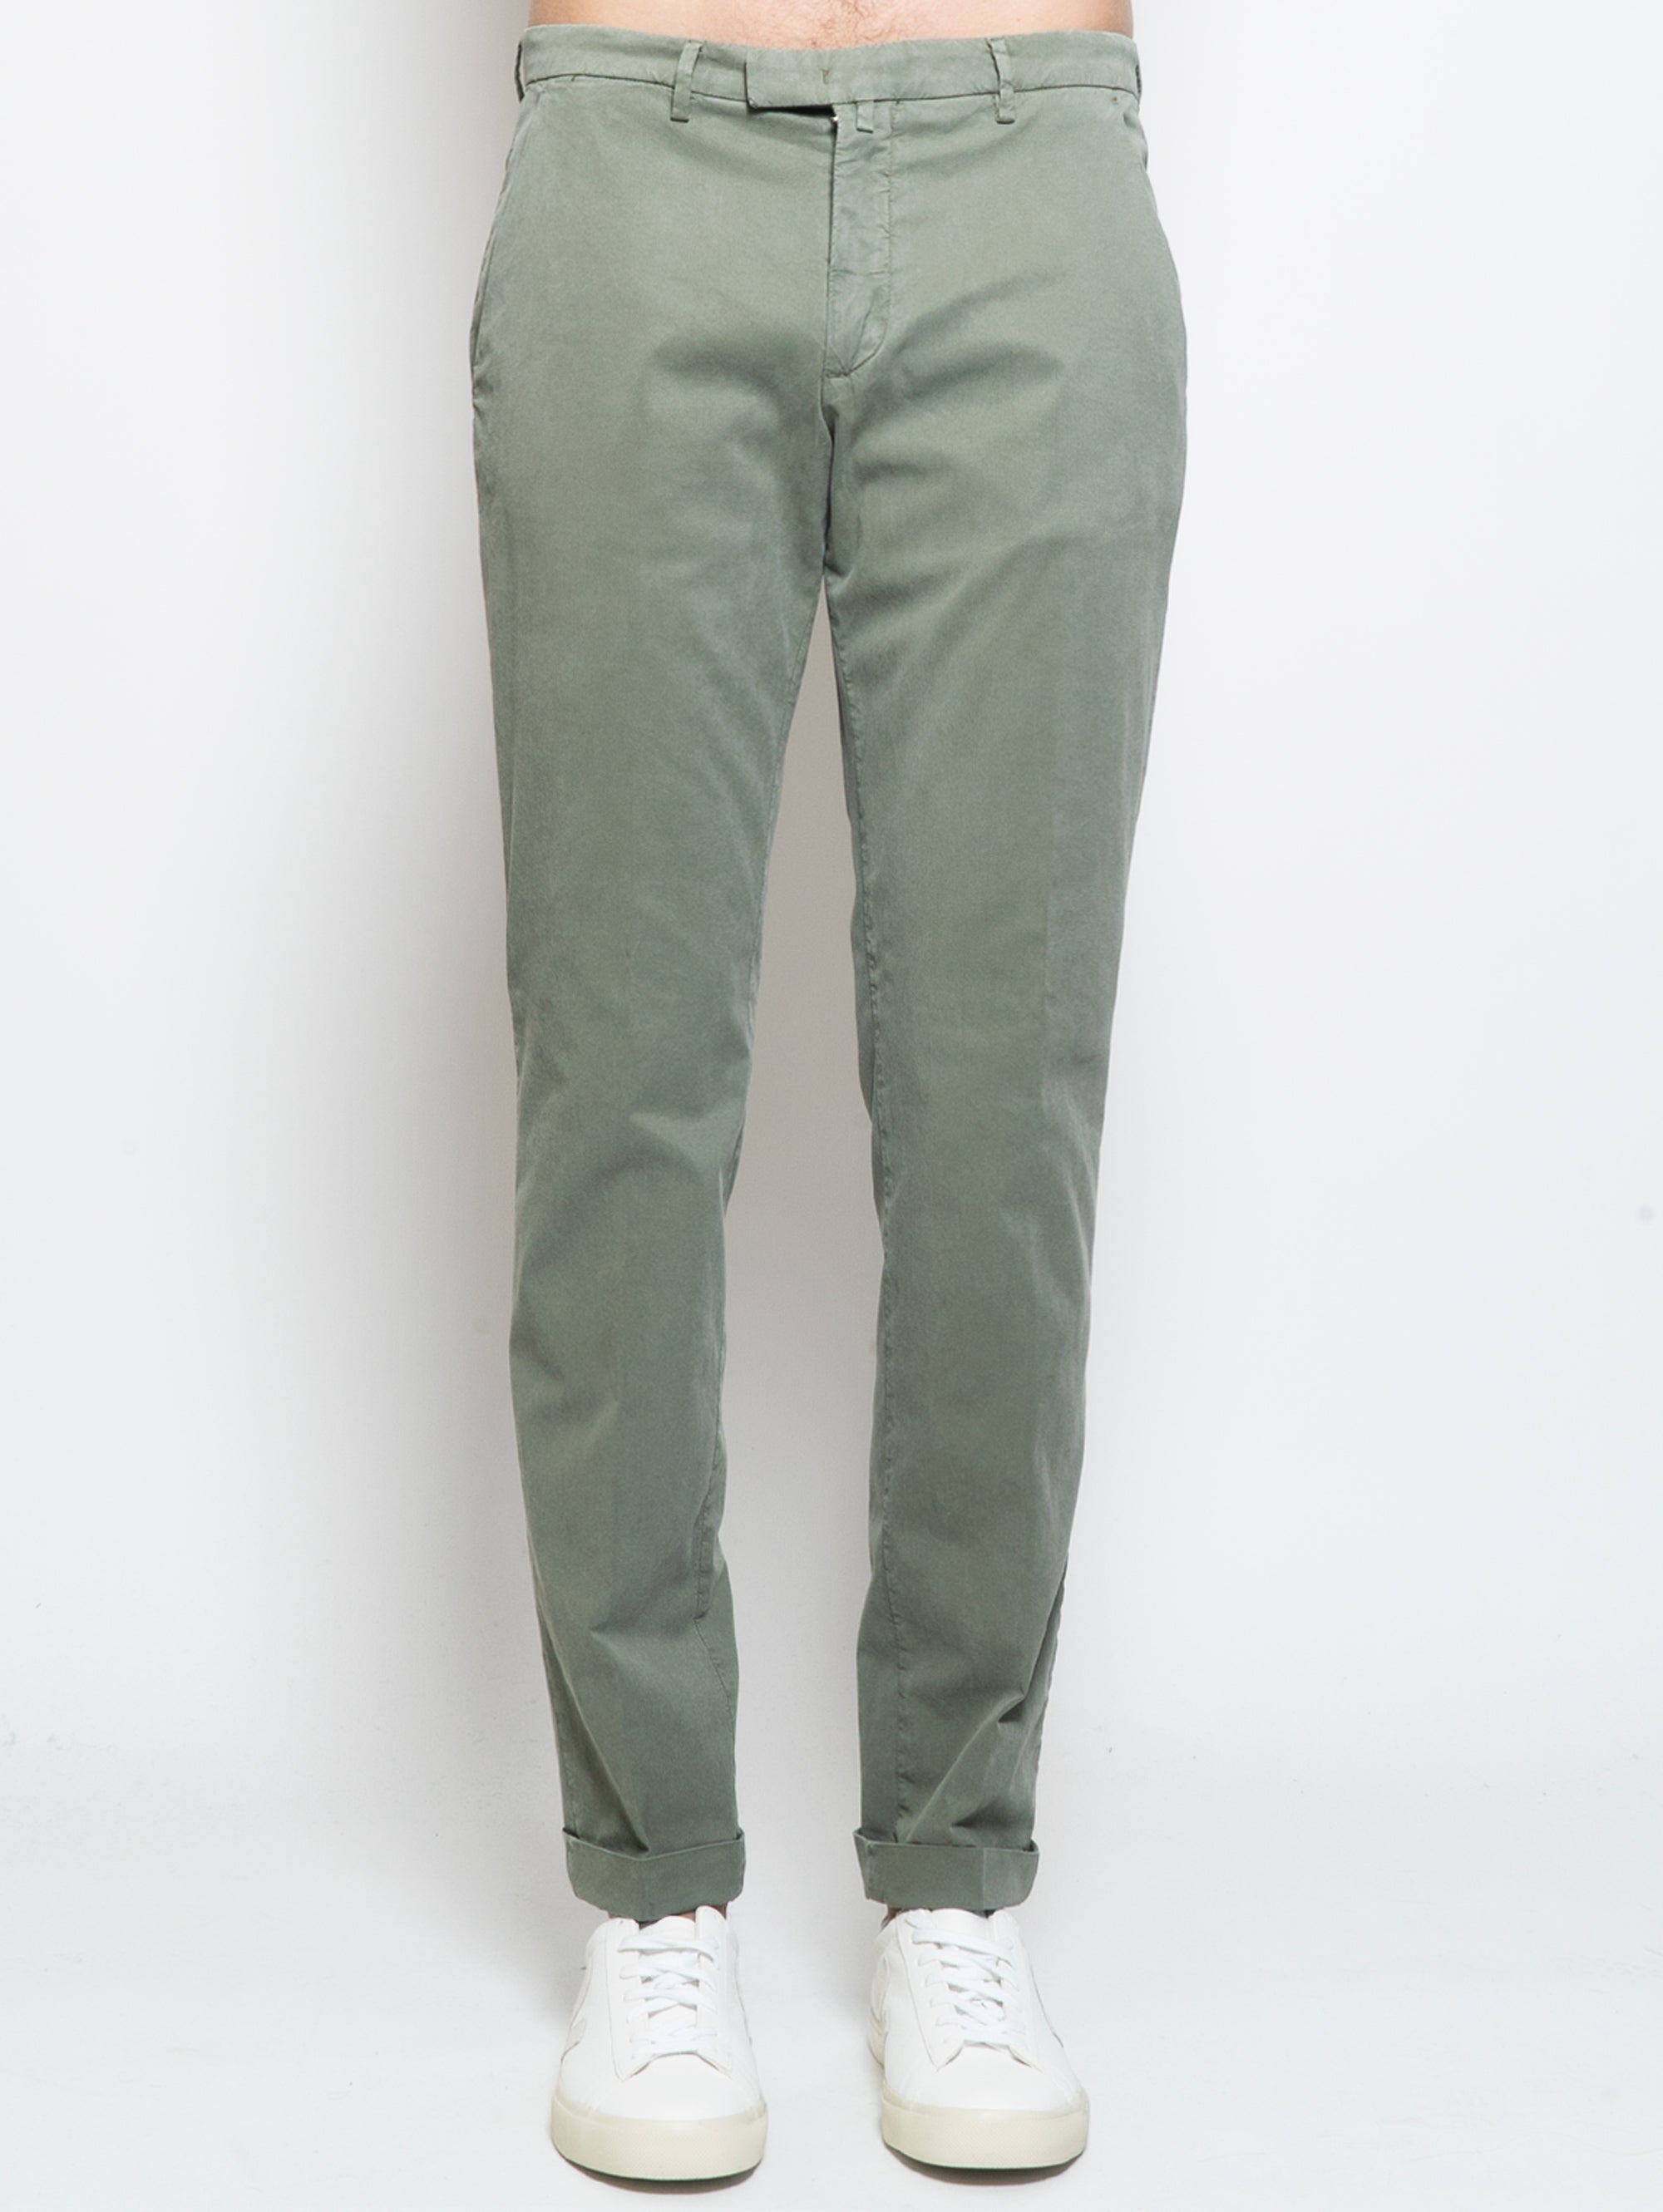 BRIGLIA 1949-Pantaloni Ventre Piatto in Slim Fit Verde-TRYME Shop